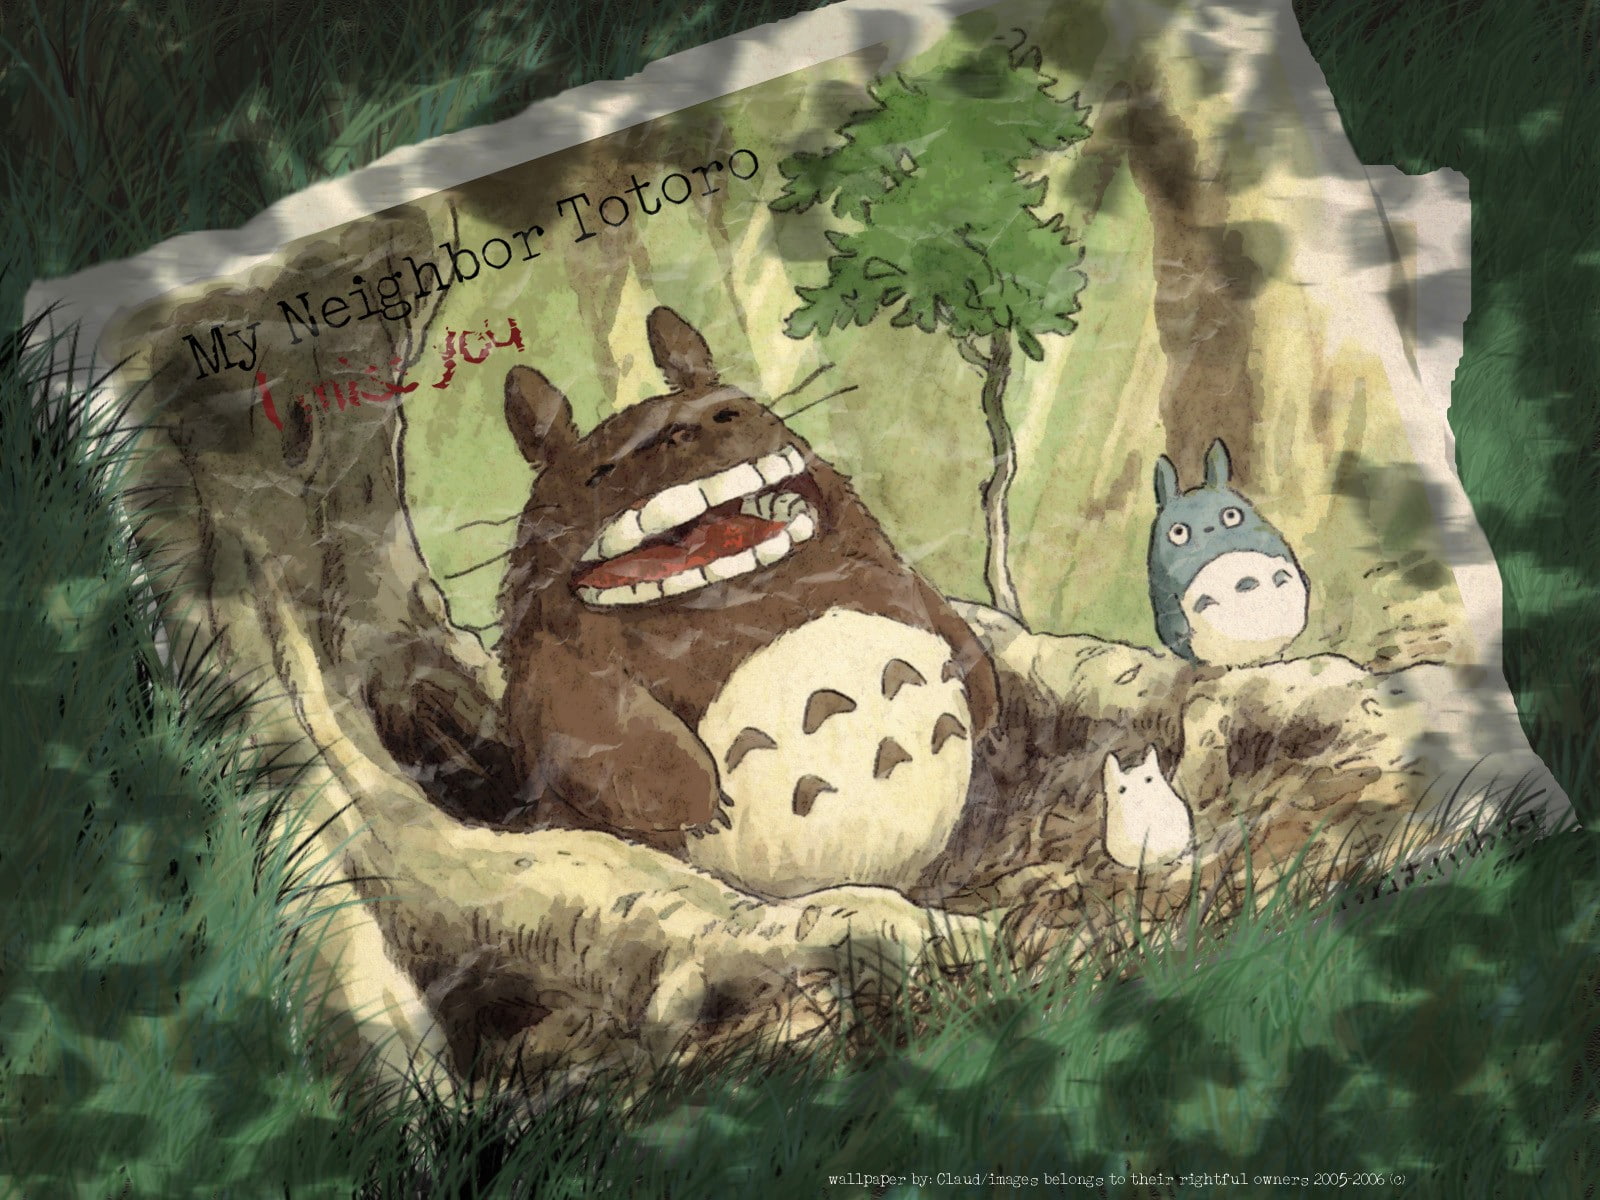 My Neighbor Totoro, Studio Ghibli